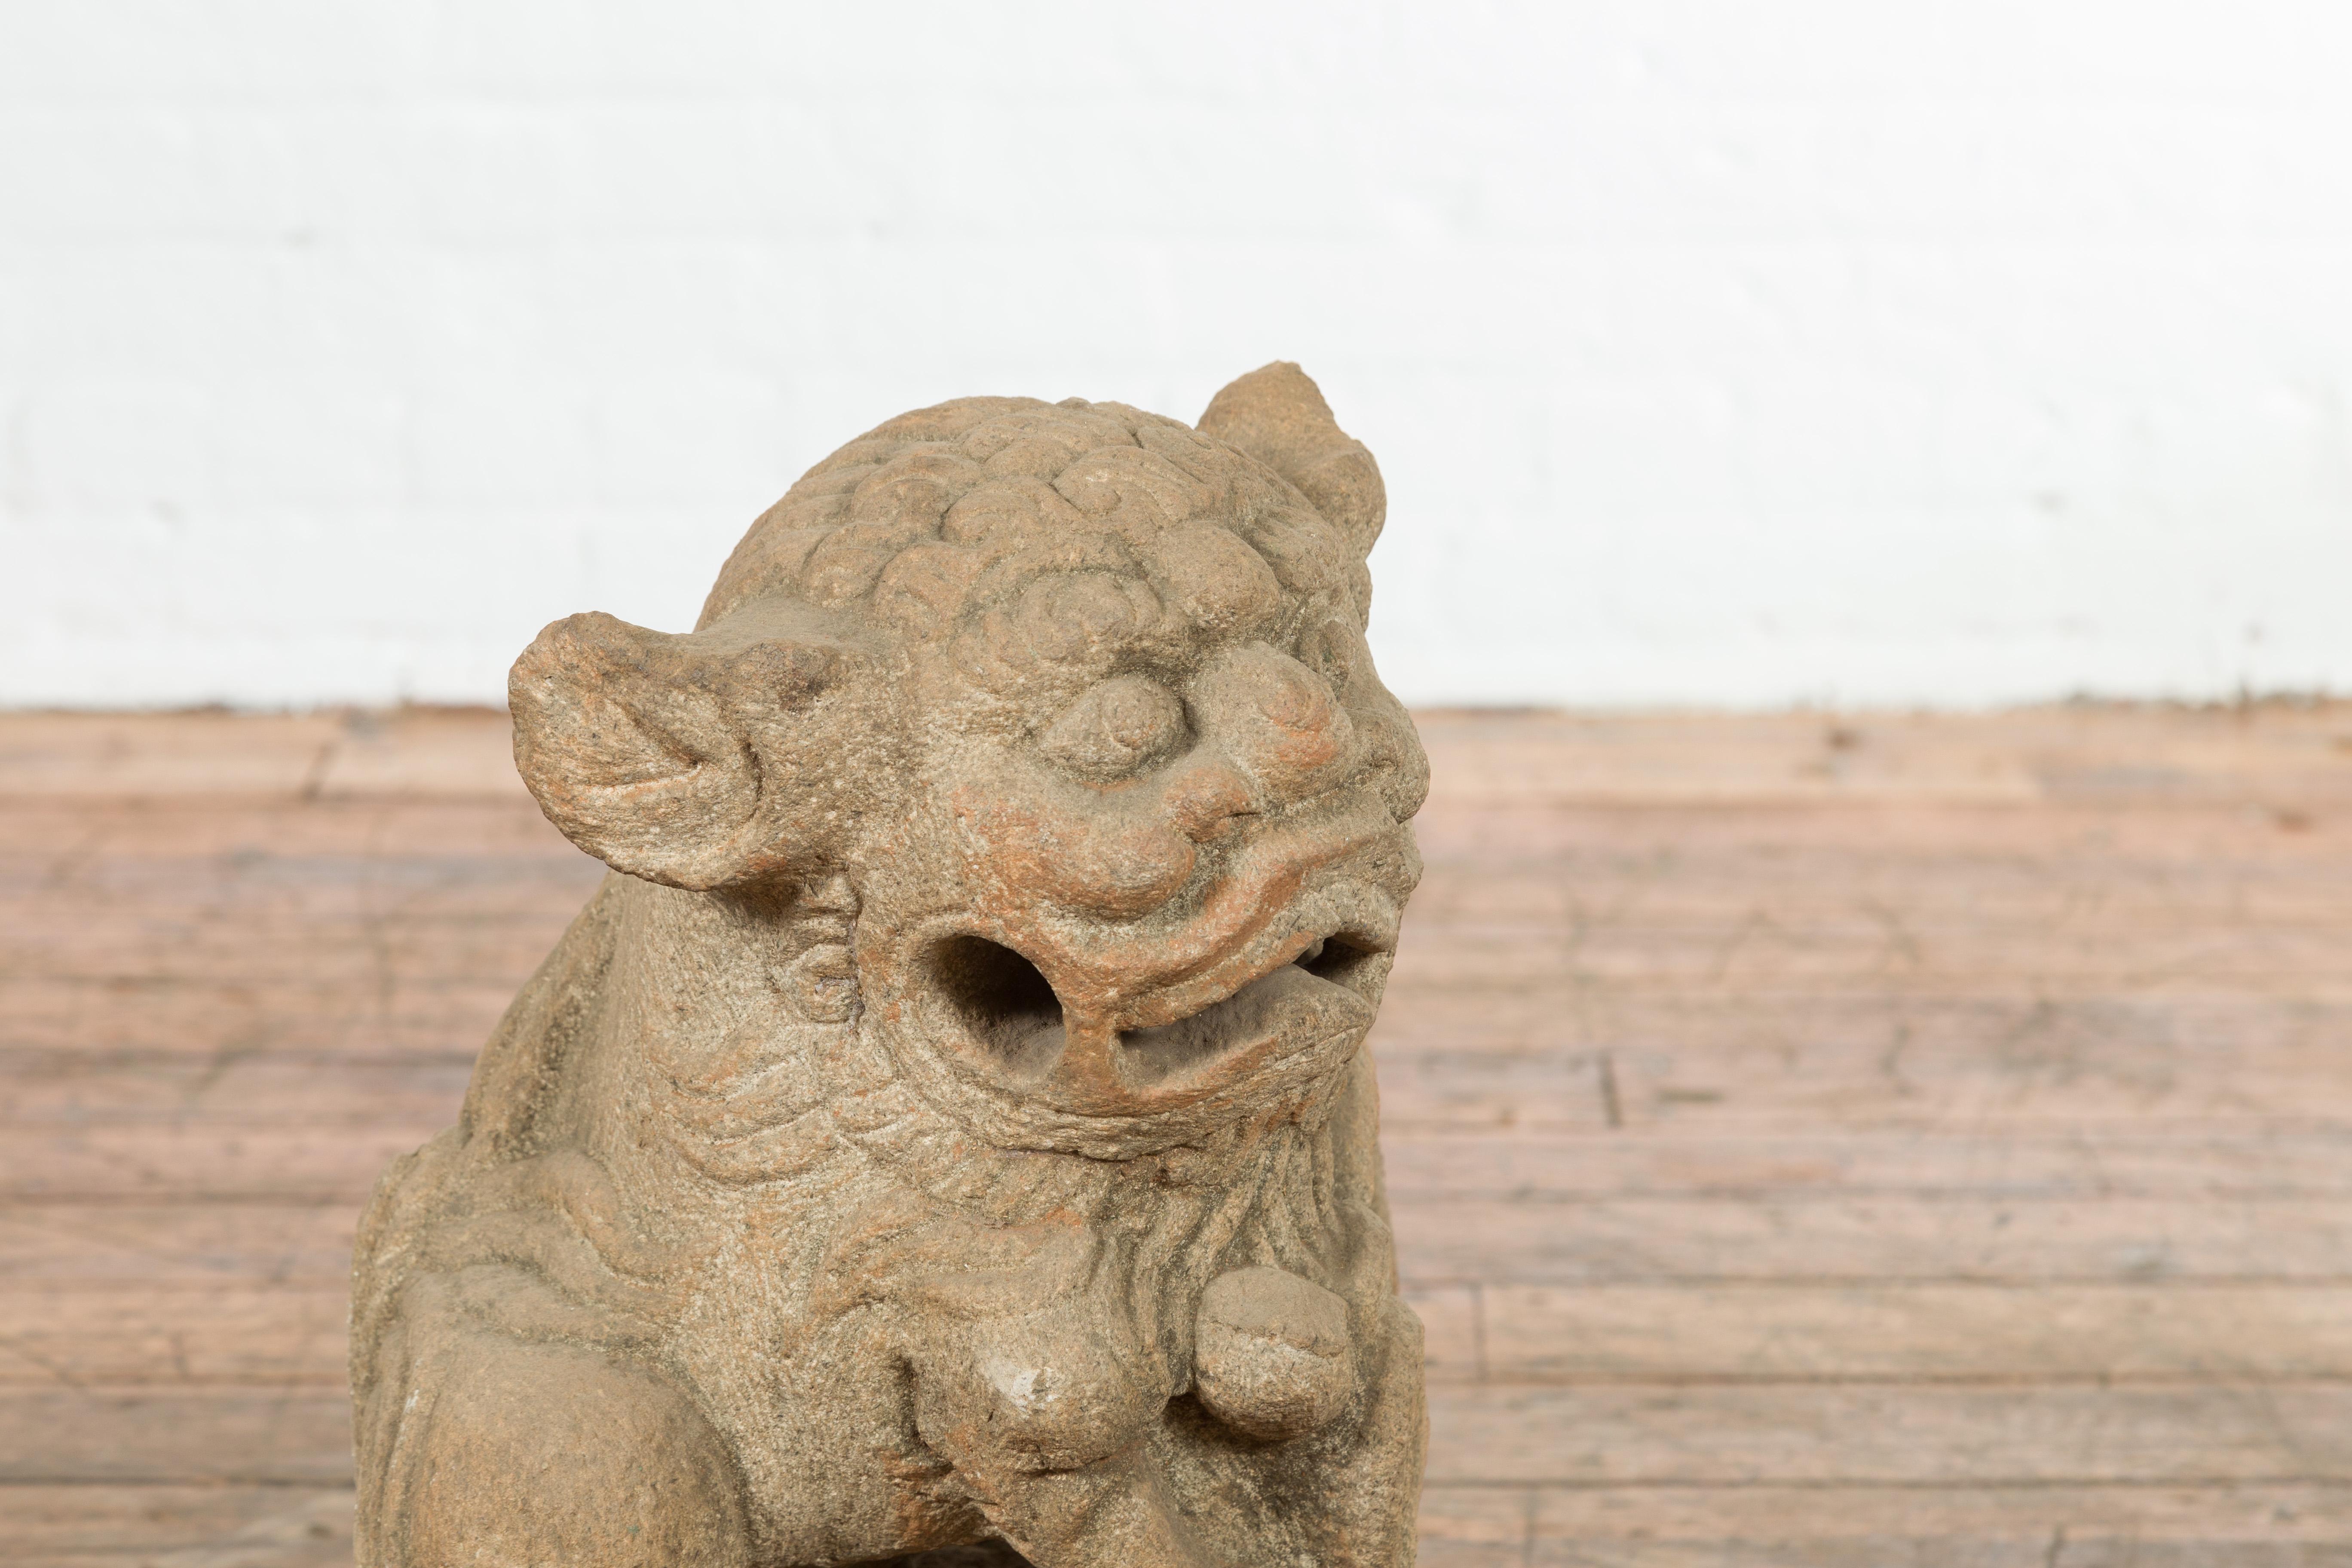 Eine chinesische Qing-Dynastie Zeit geschnitzt Stein foo Hund Wächter Löwe aus dem 19. Jahrhundert, auf quadratischem Sockel. Diese Steinskulptur wurde in China während der Qing-Dynastie geschaffen und zeigt einen Wächterlöwen, der auf einem